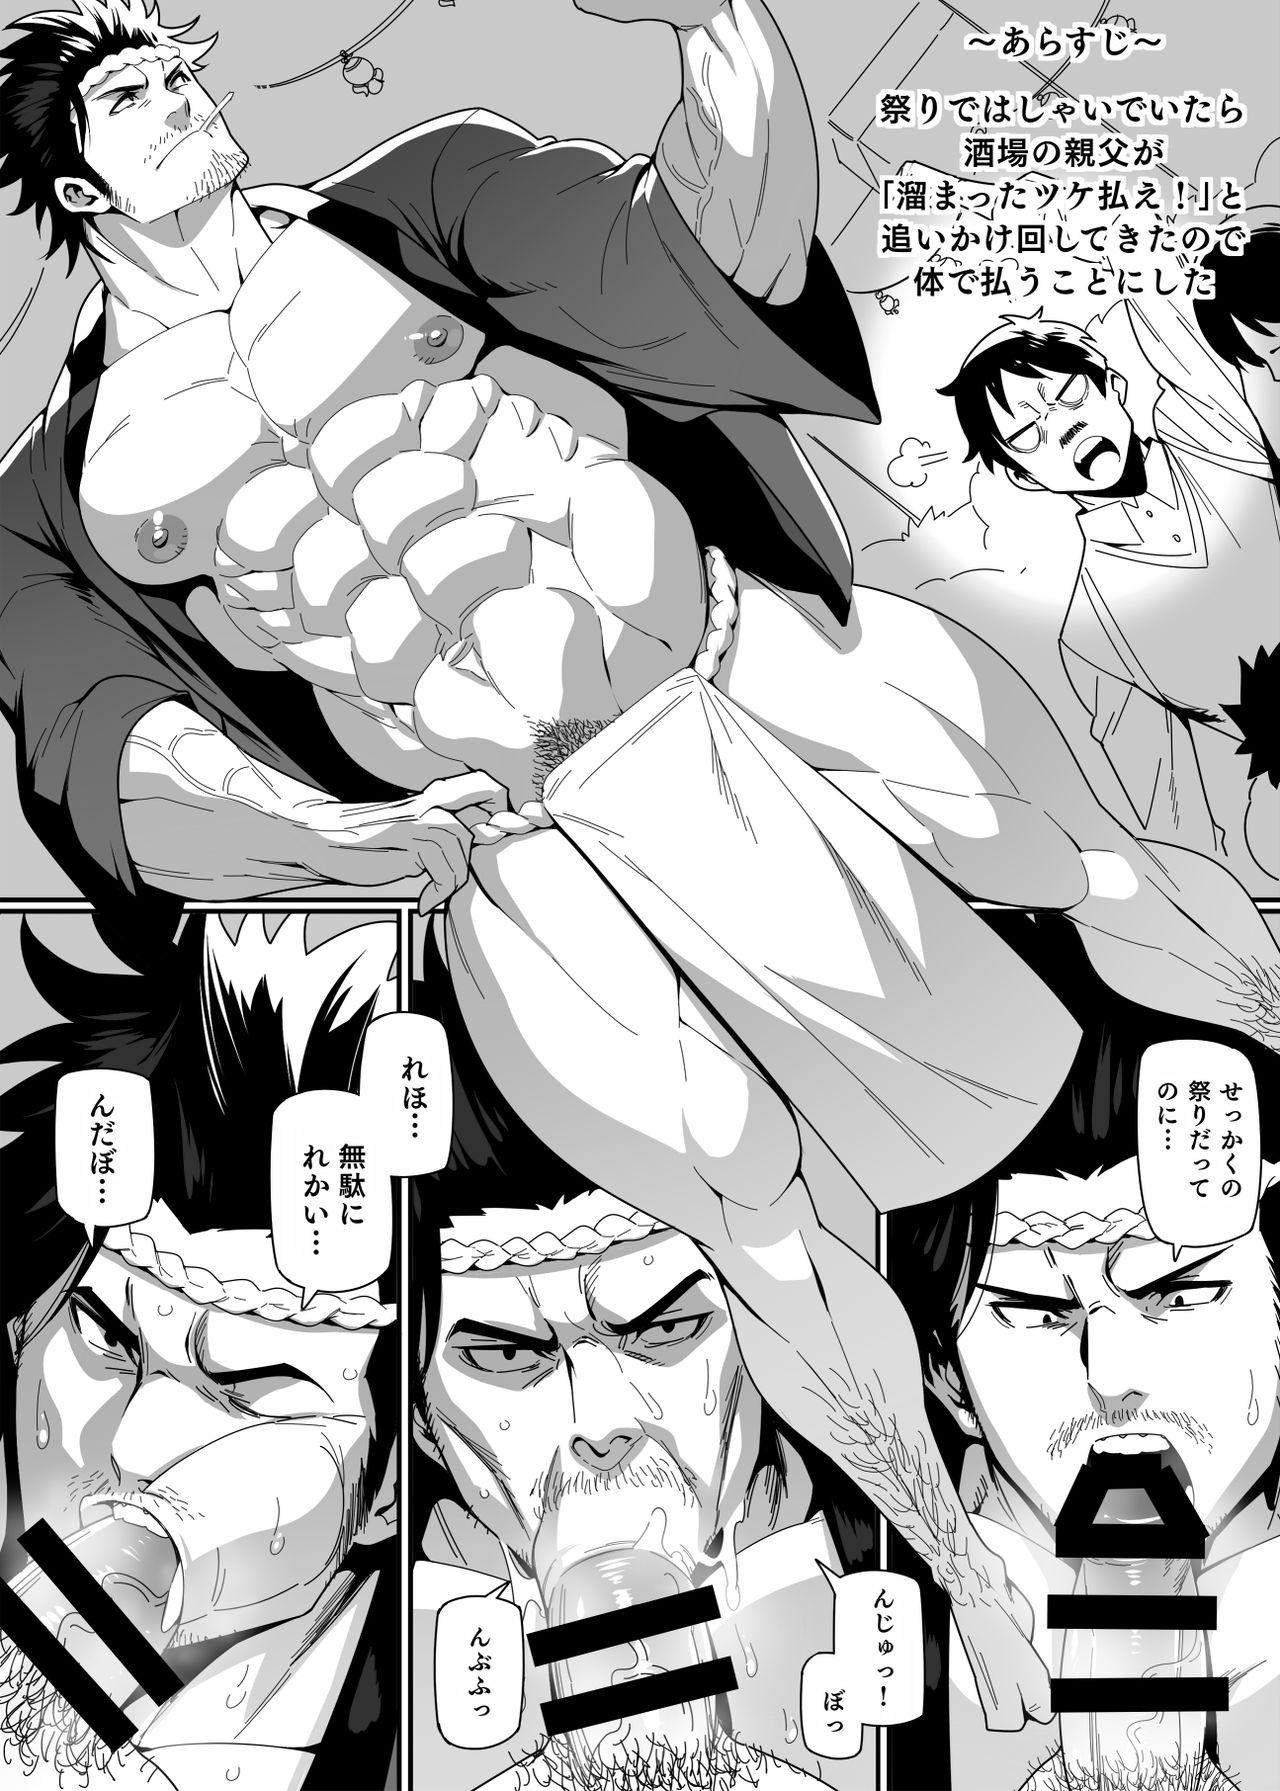 Fake Matsuri no Yoru ni - Black clover Roundass - Page 2